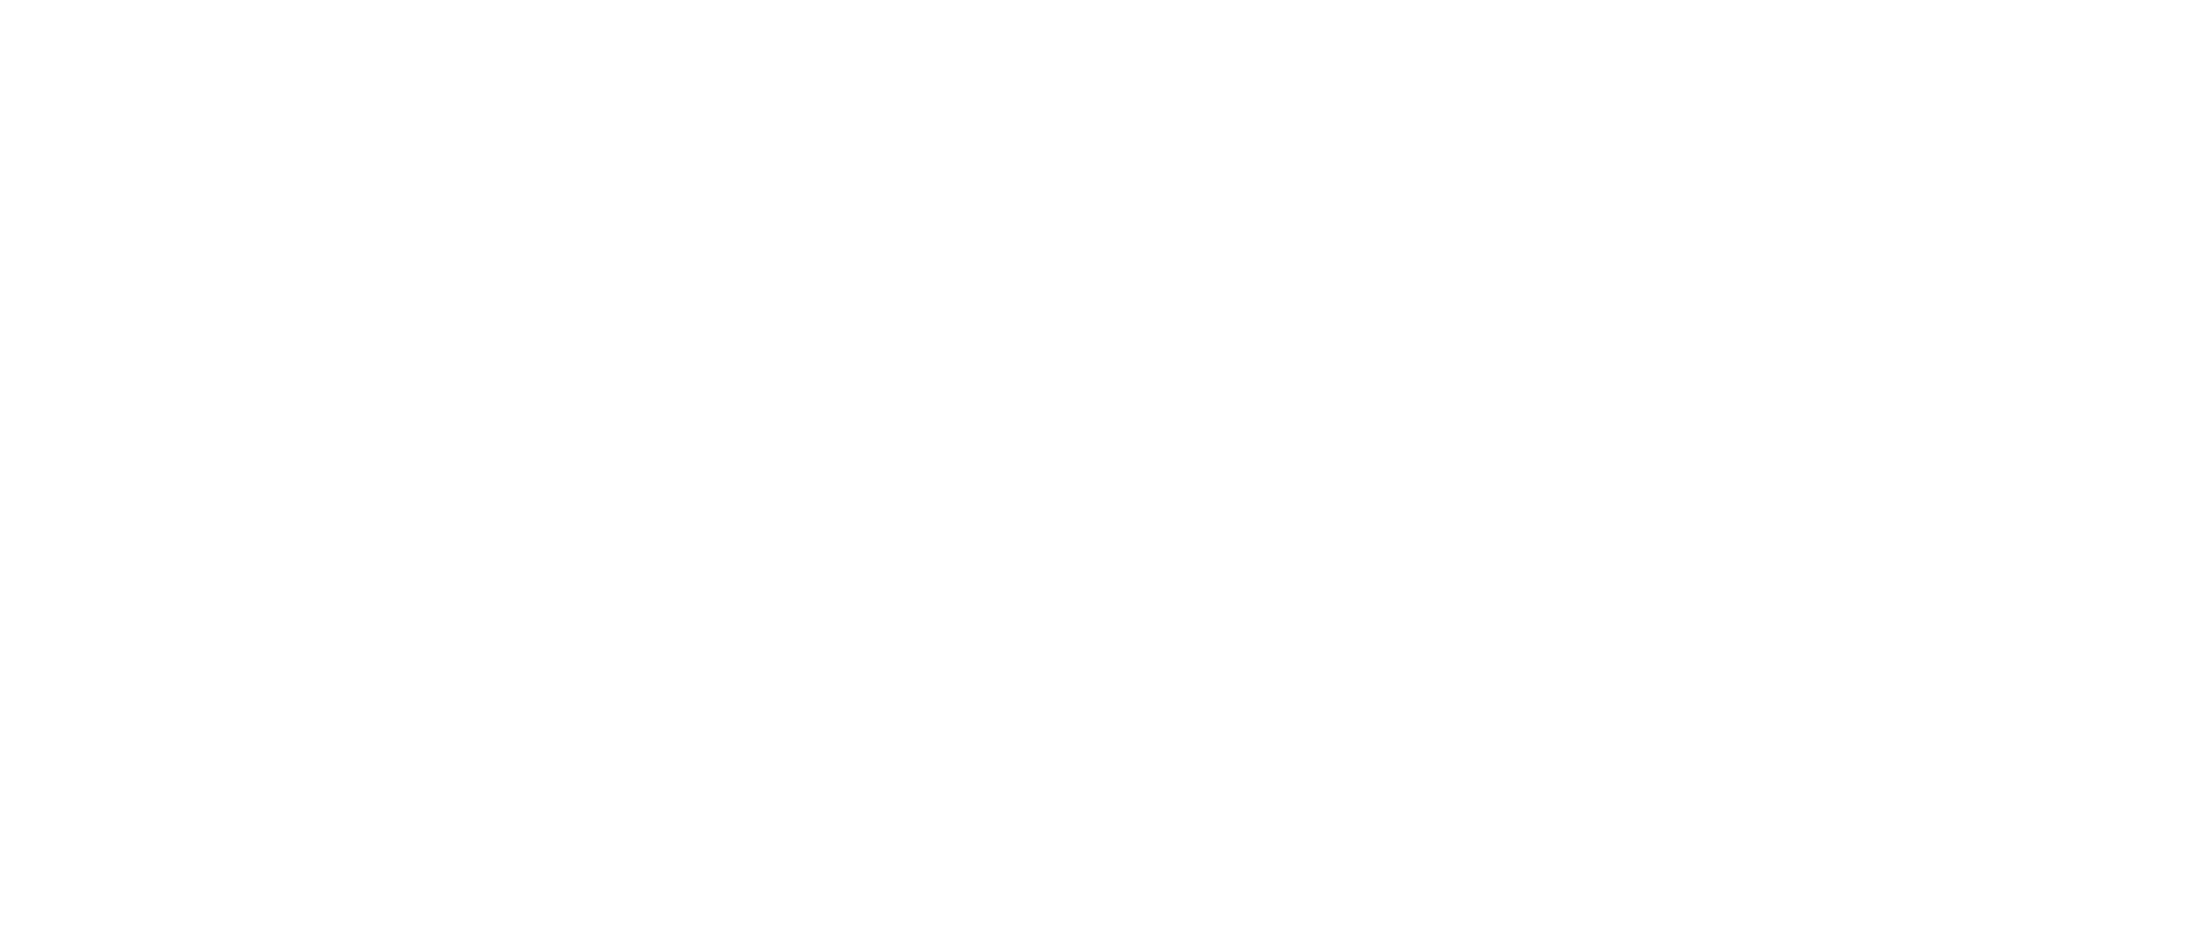 FIP Amman 2019